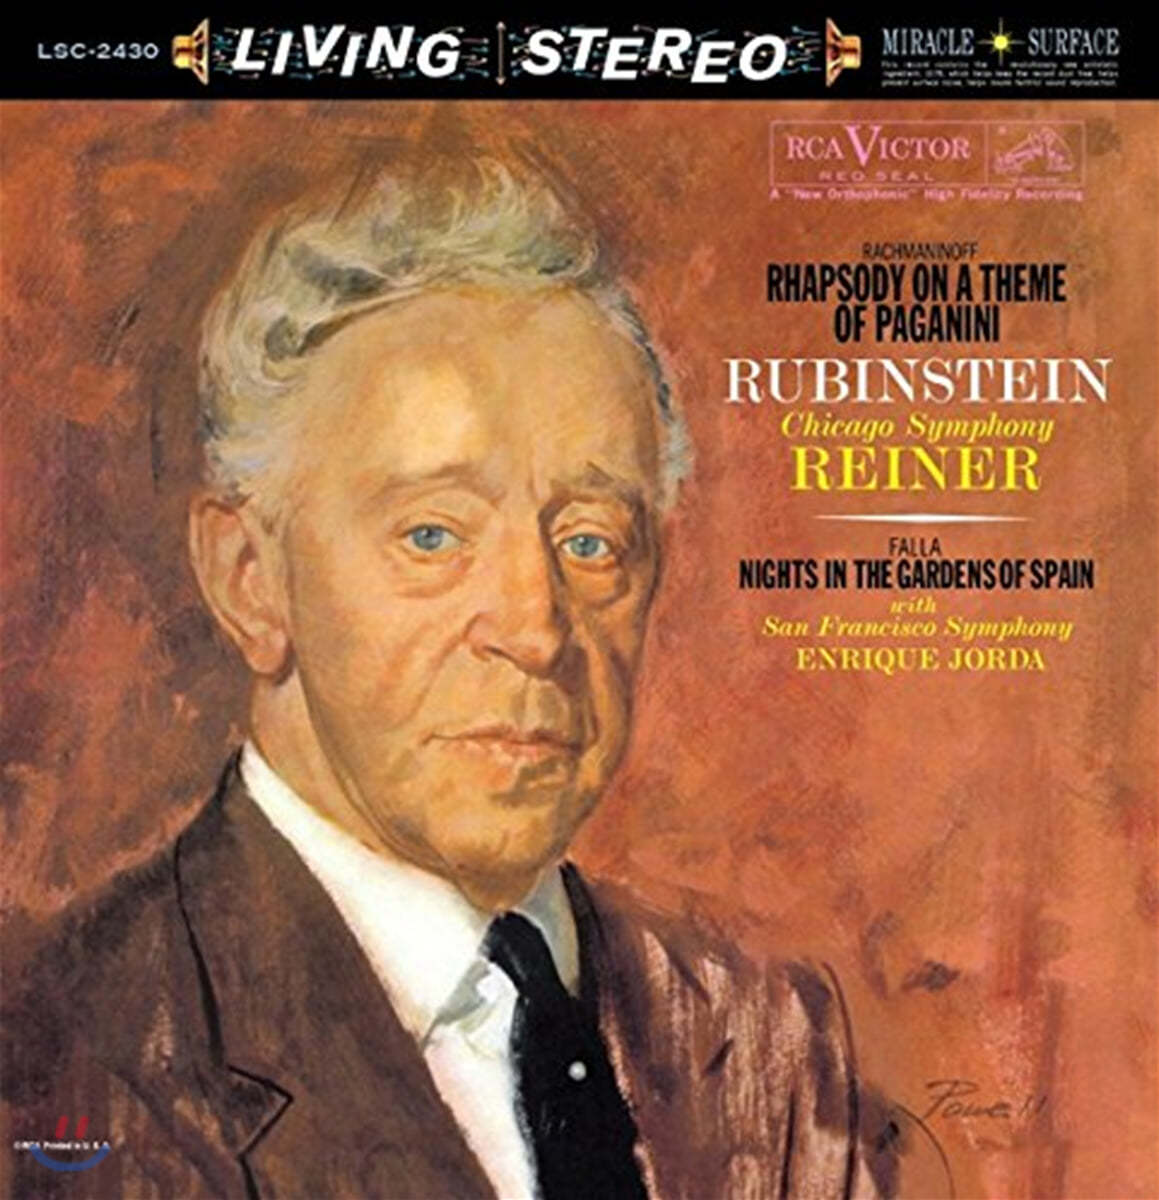 Arthur Rubinstein 라흐마니노프: 파가니니 광시곡 / 파야: 스페인 정원의 밤 (Rachmaninov: Paganini Rhapsody)